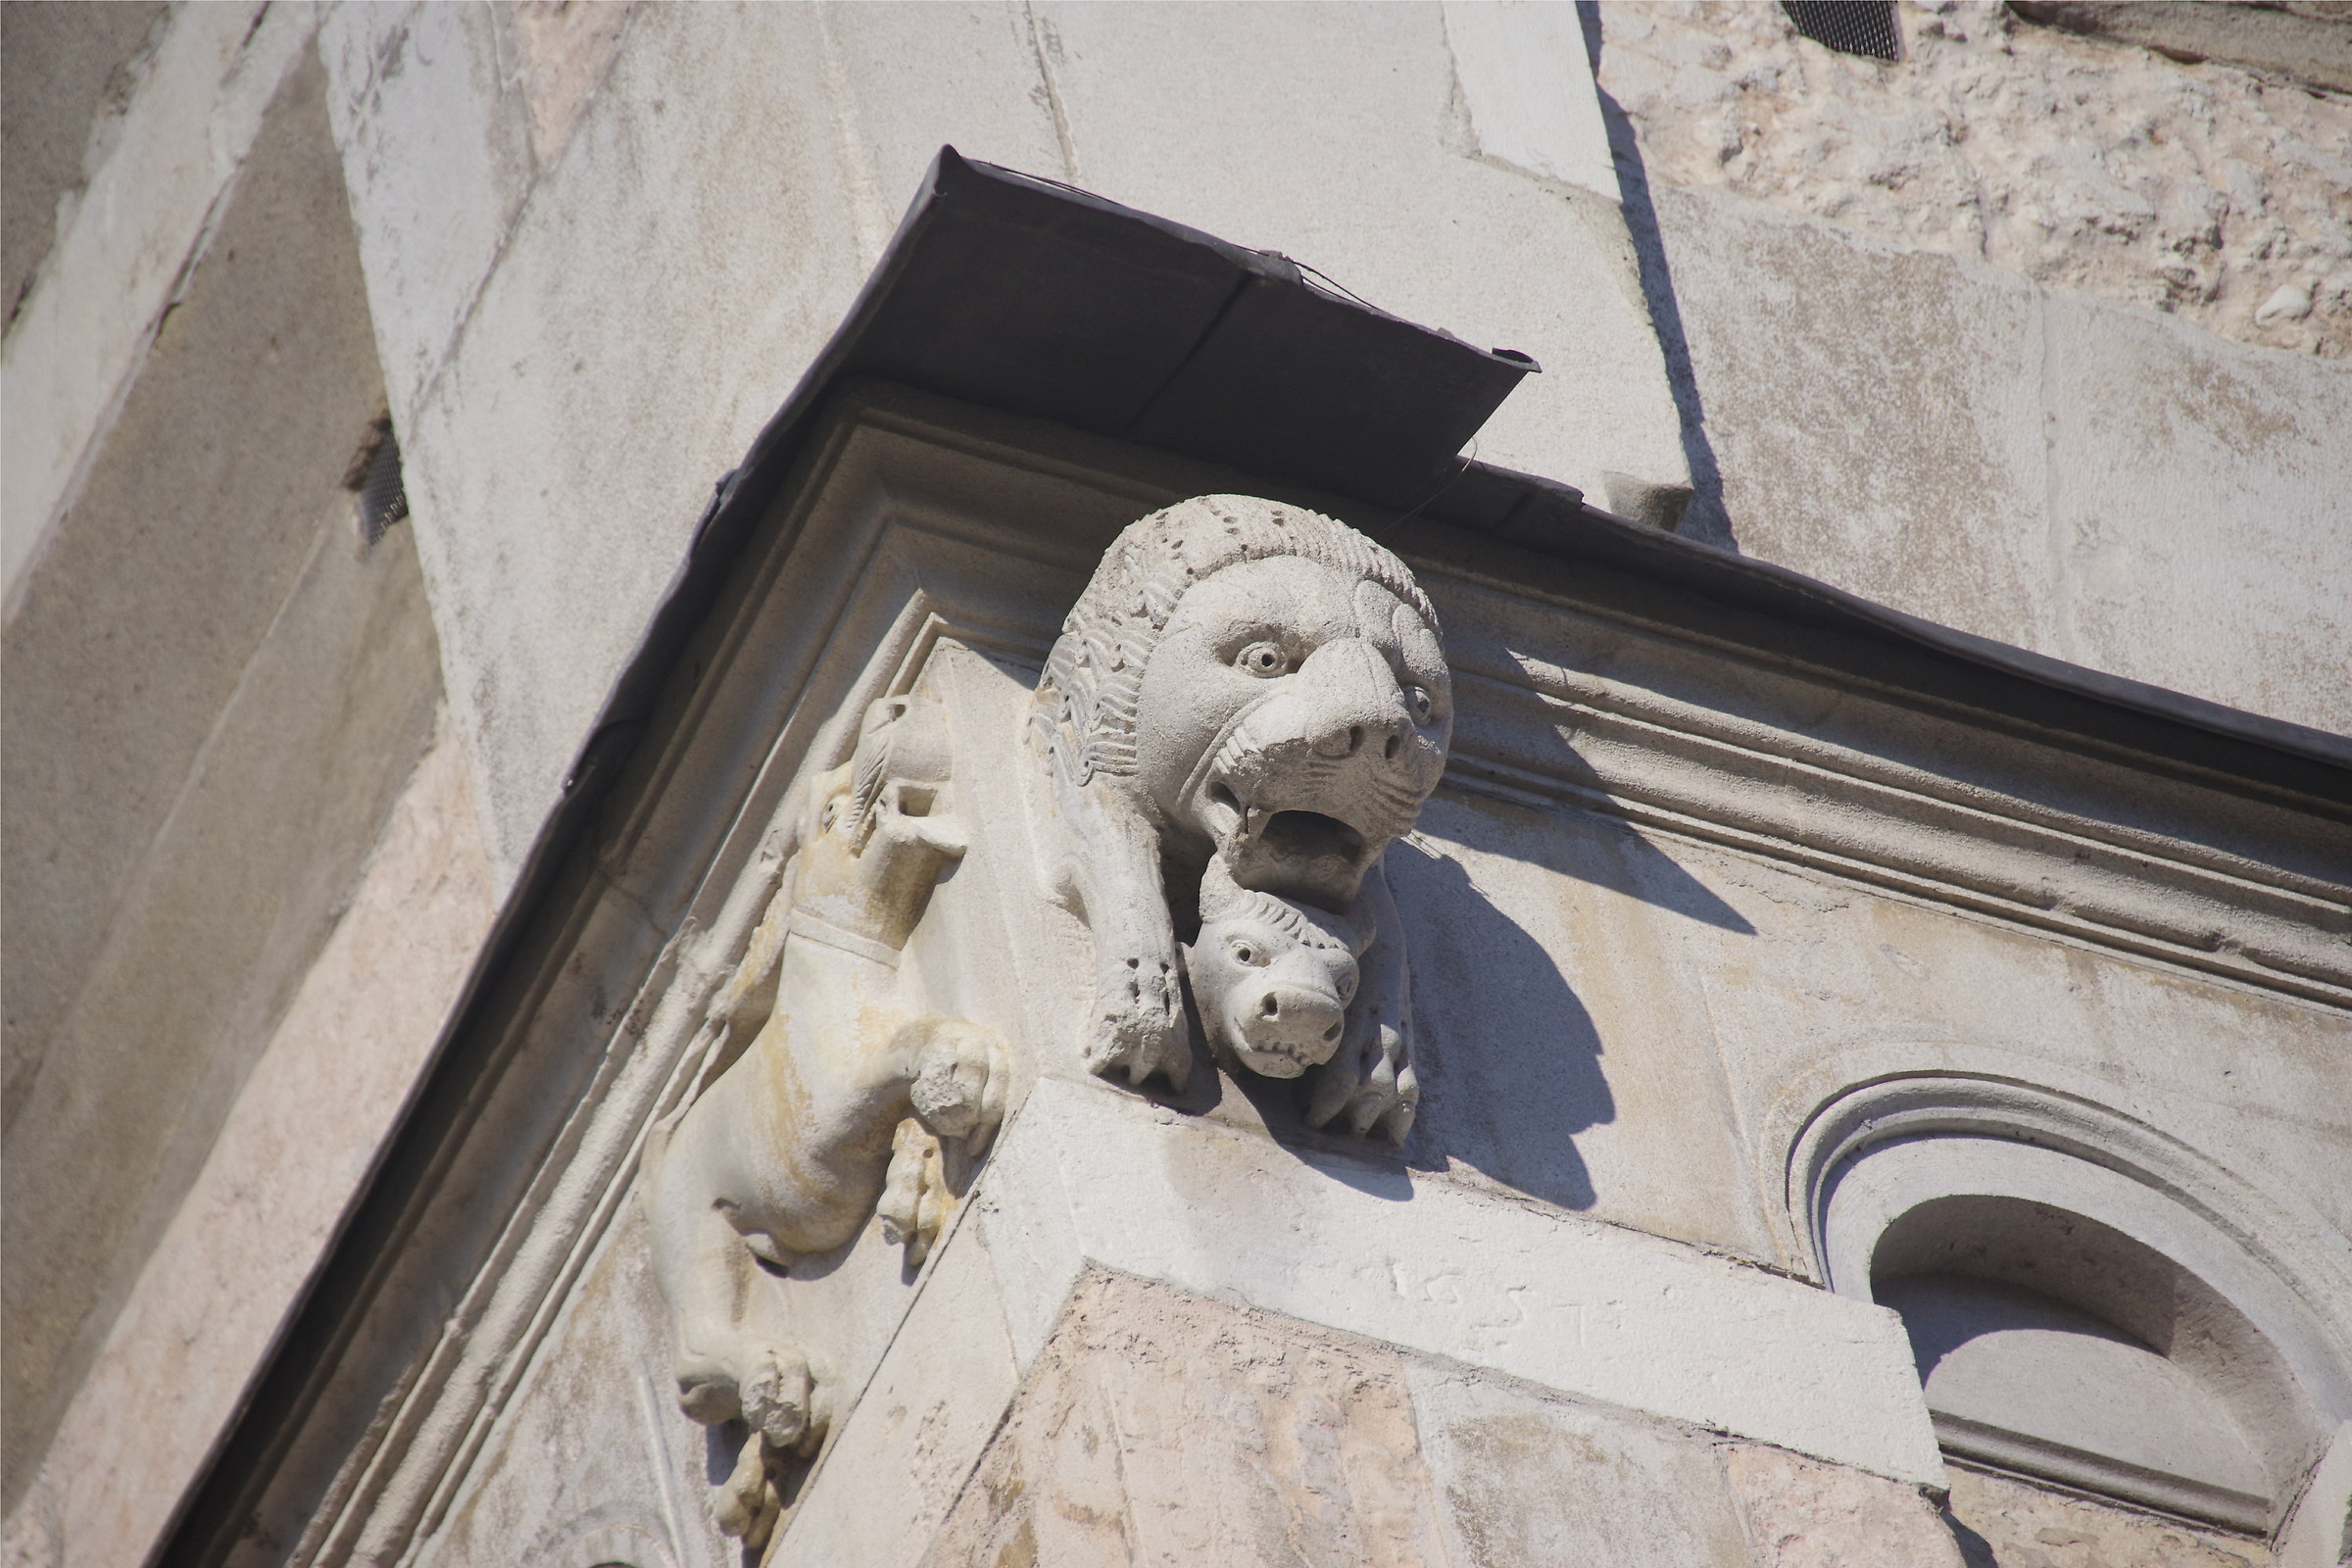 Visioni medievali: il Duomo di Modena 2...